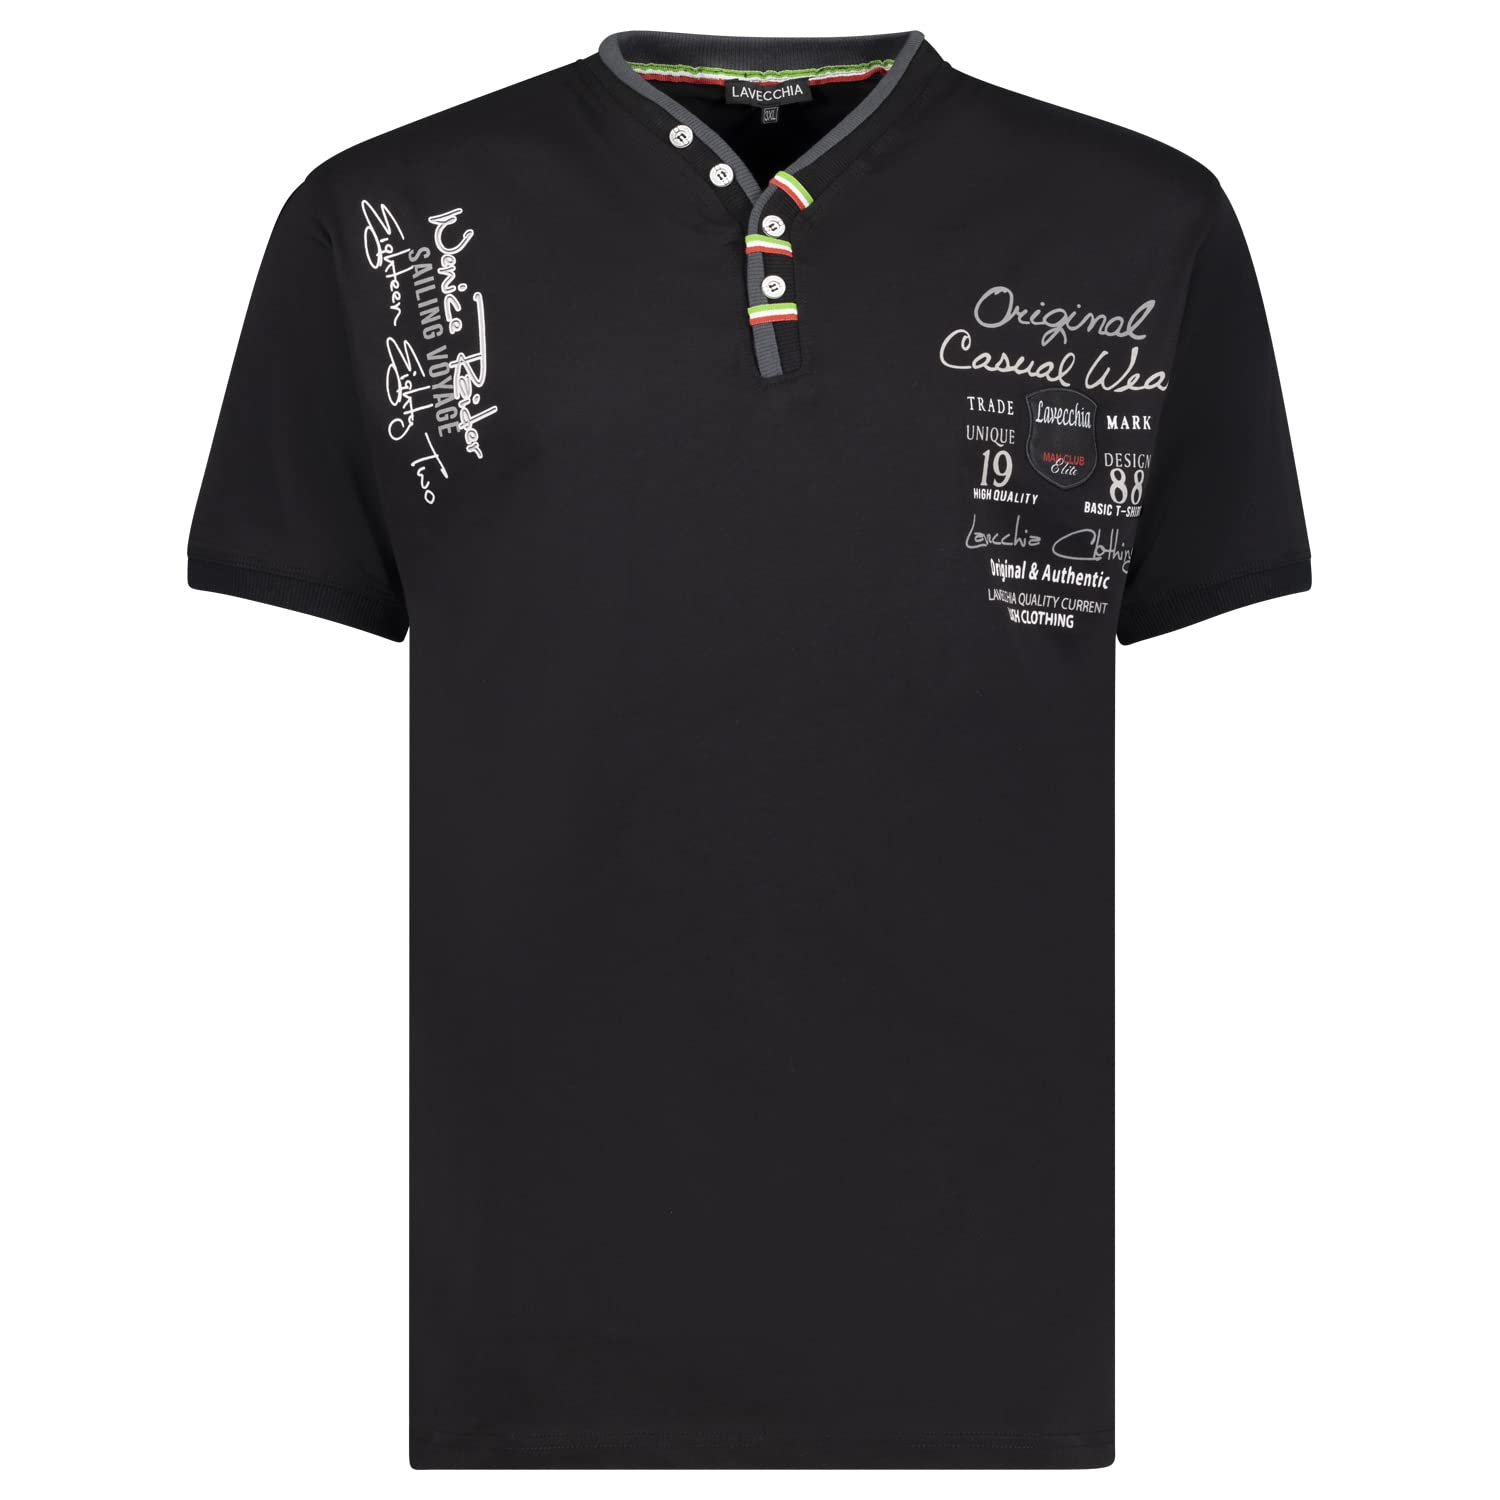 Lavecchia Herren T-Shirt Schwarz Große Größe, Schwarz, 6XL